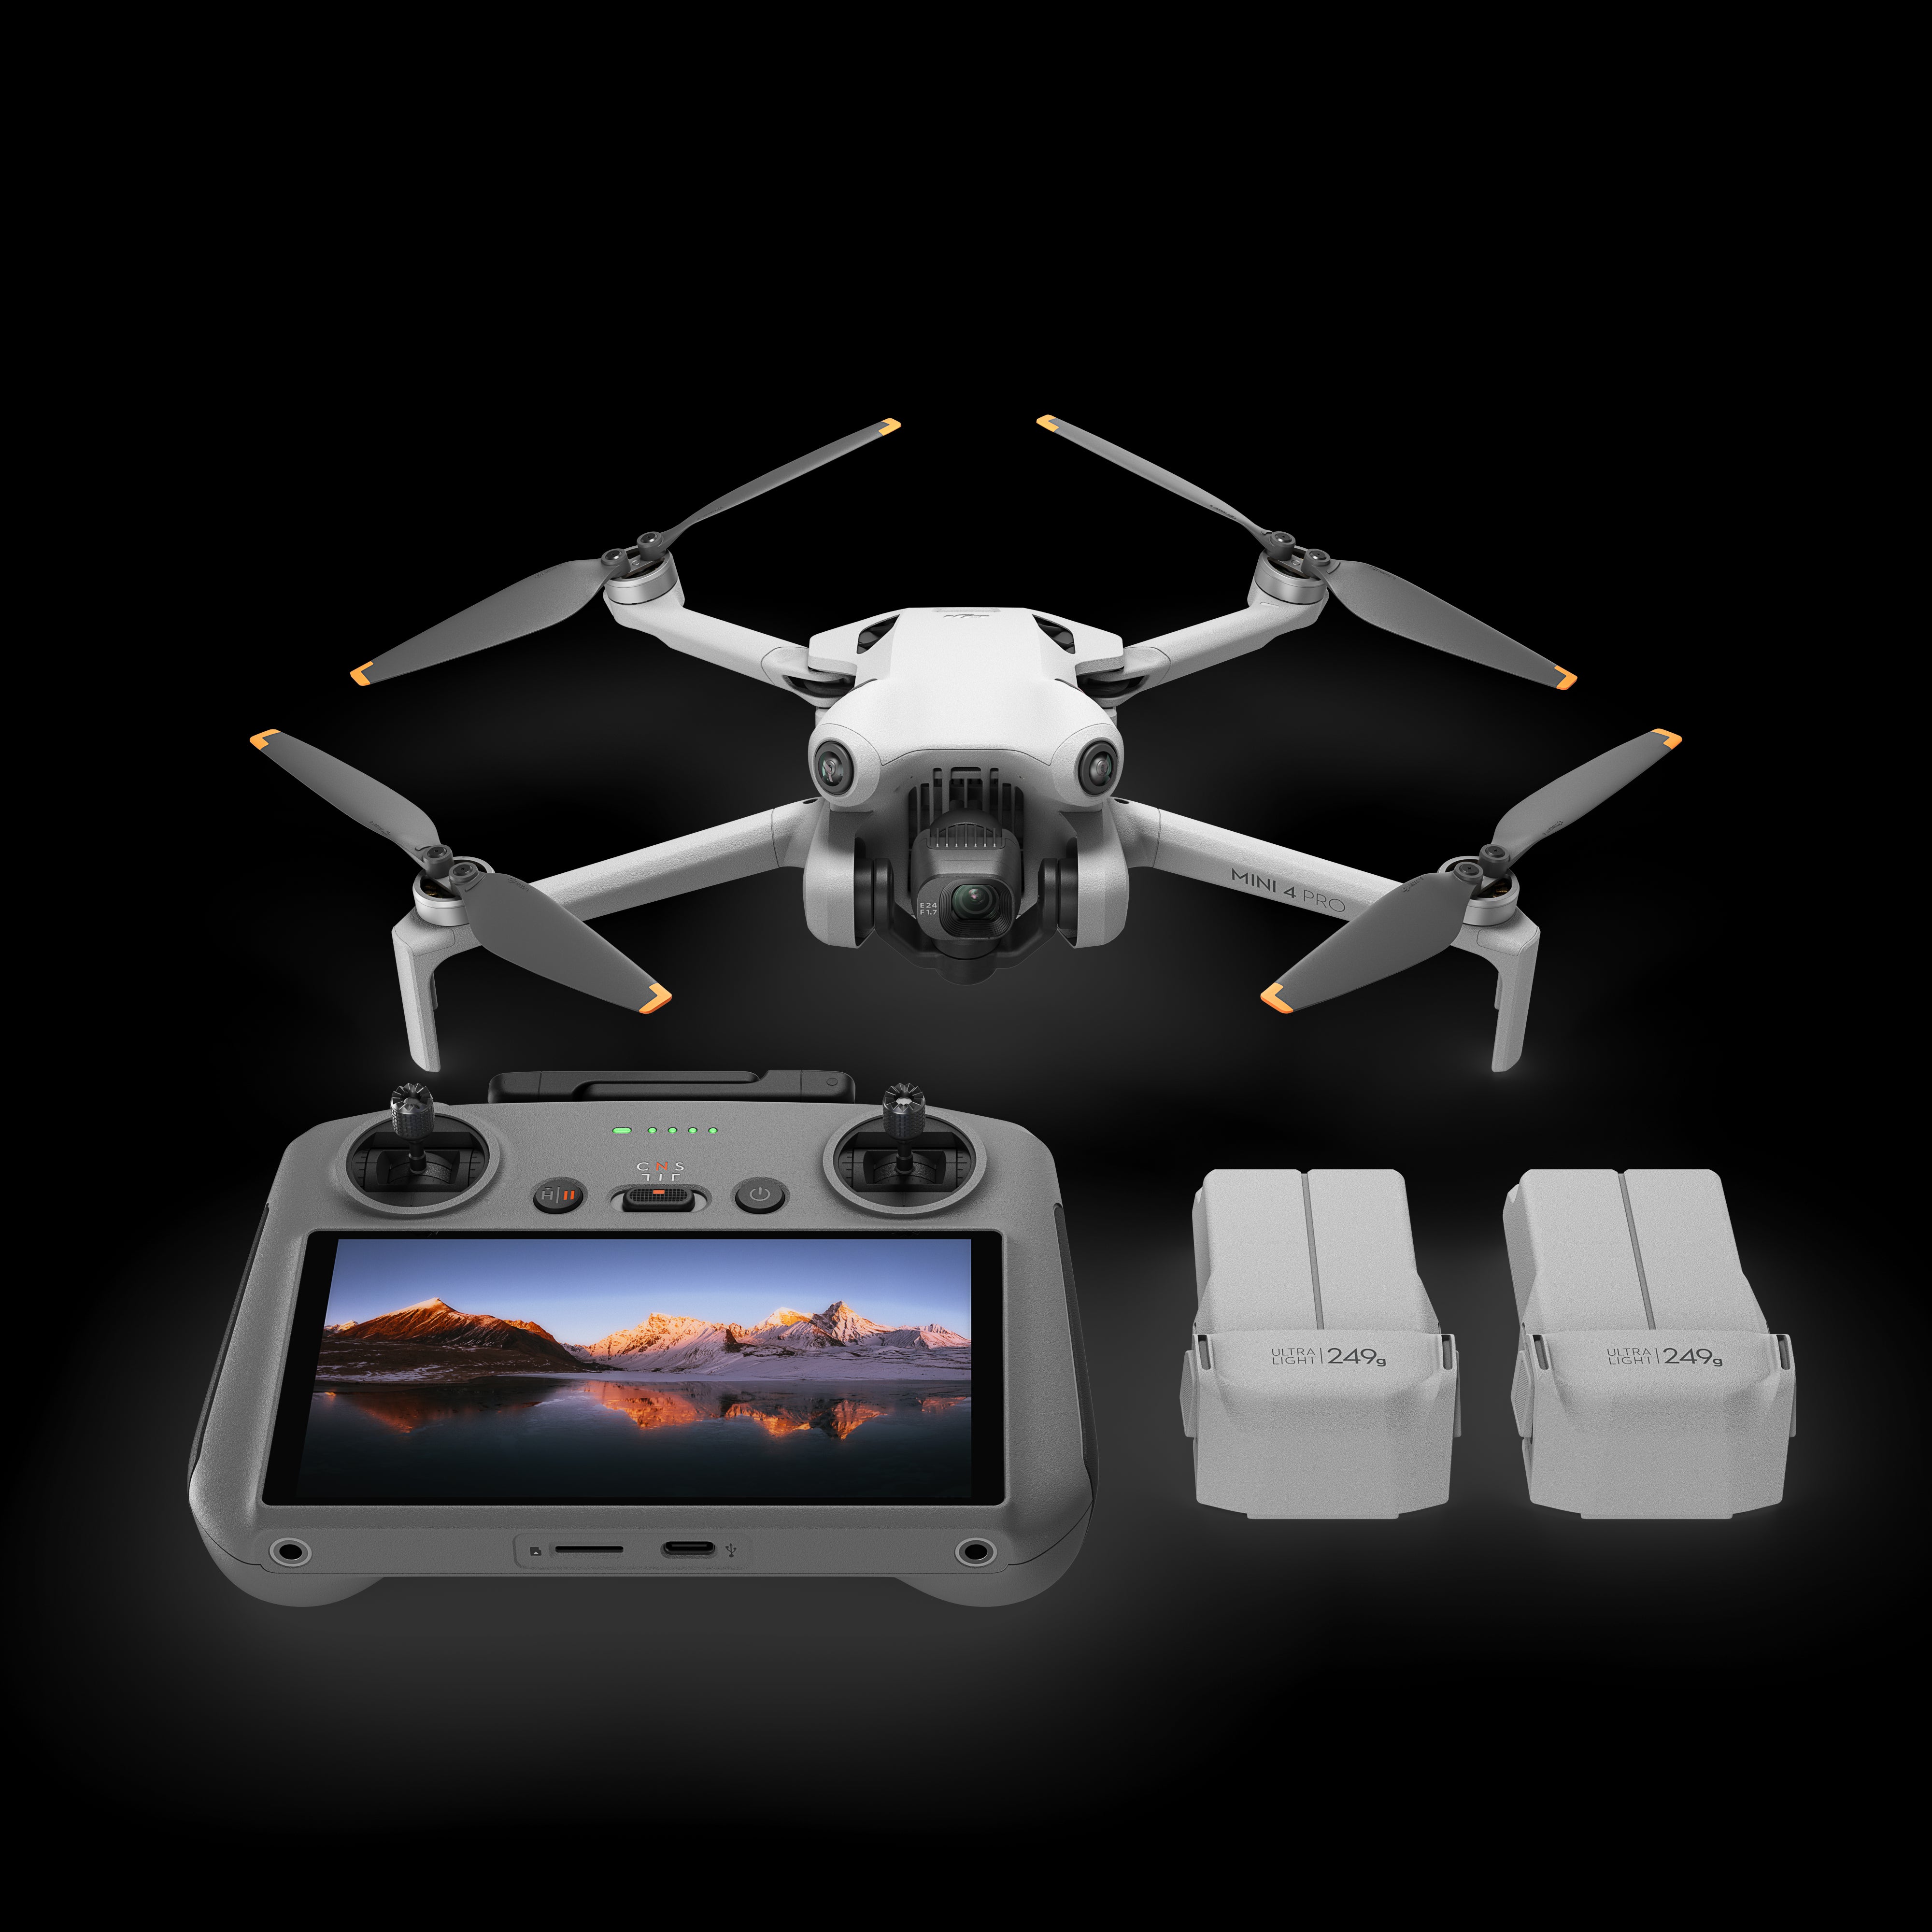 SUPPORT MULTIFONCTION DJI AVATA POUR CAMÉRA D'ACTION - E.T. Drone